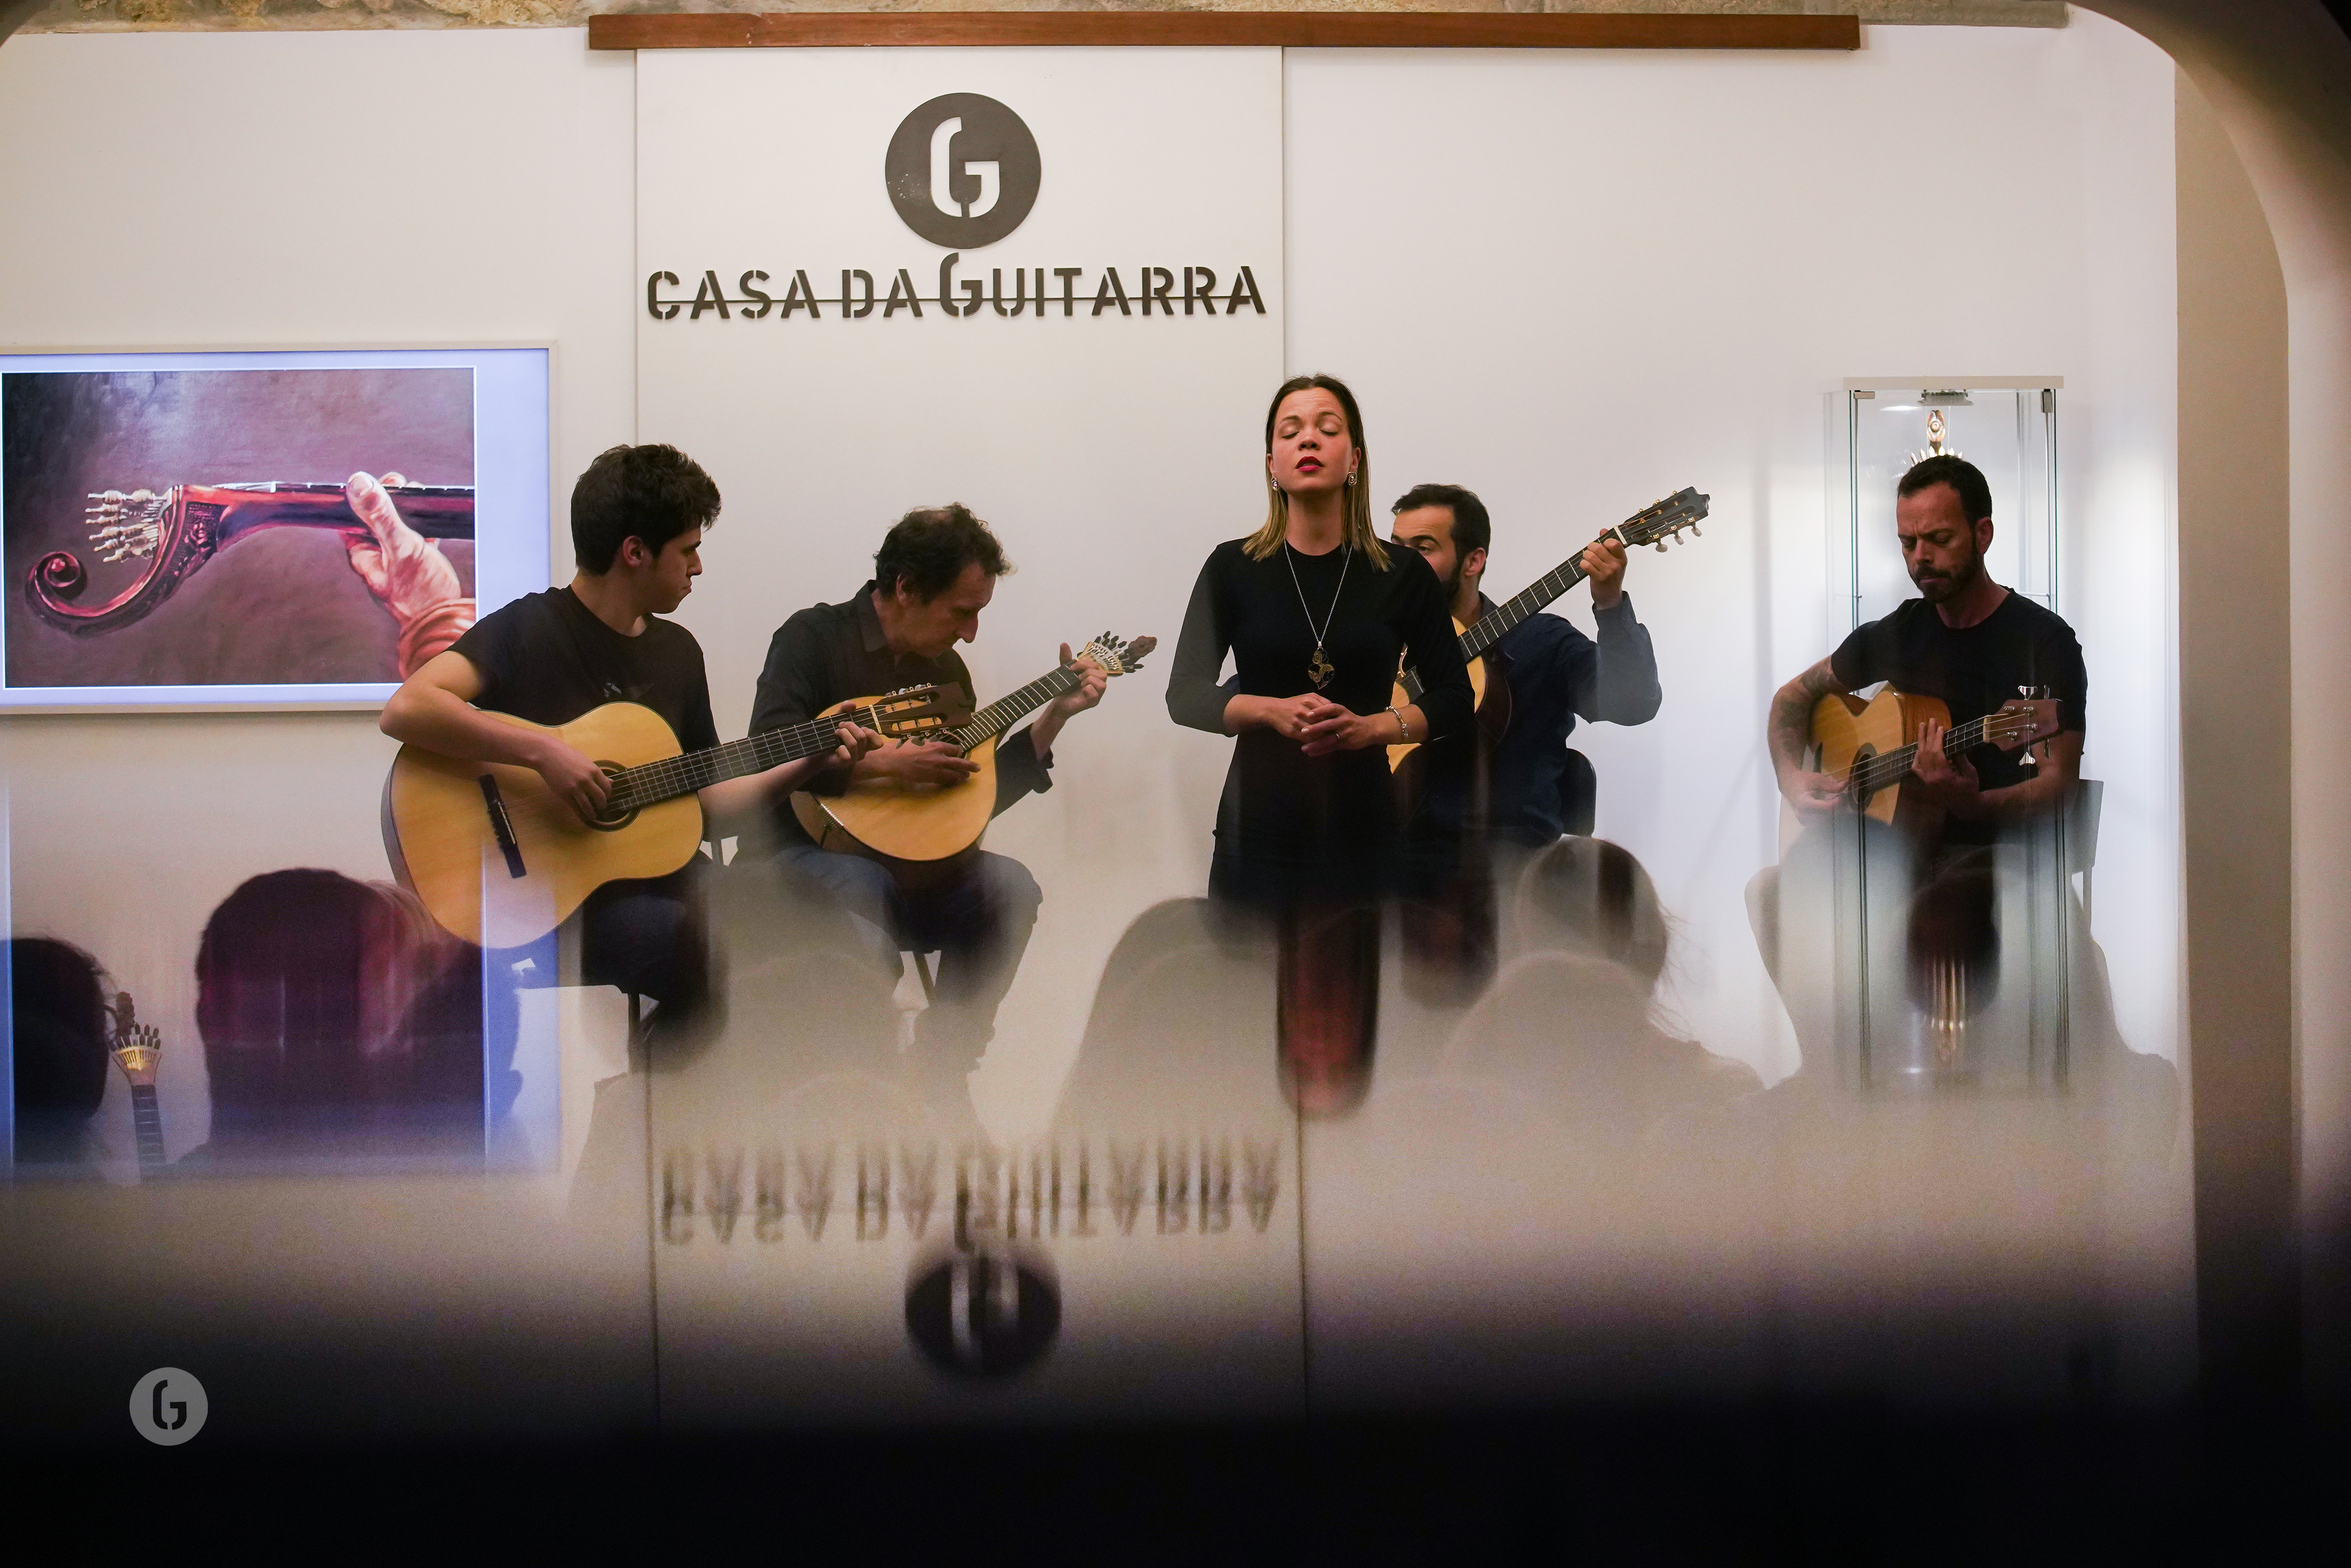 Casa da Guitarra  - Fado houses